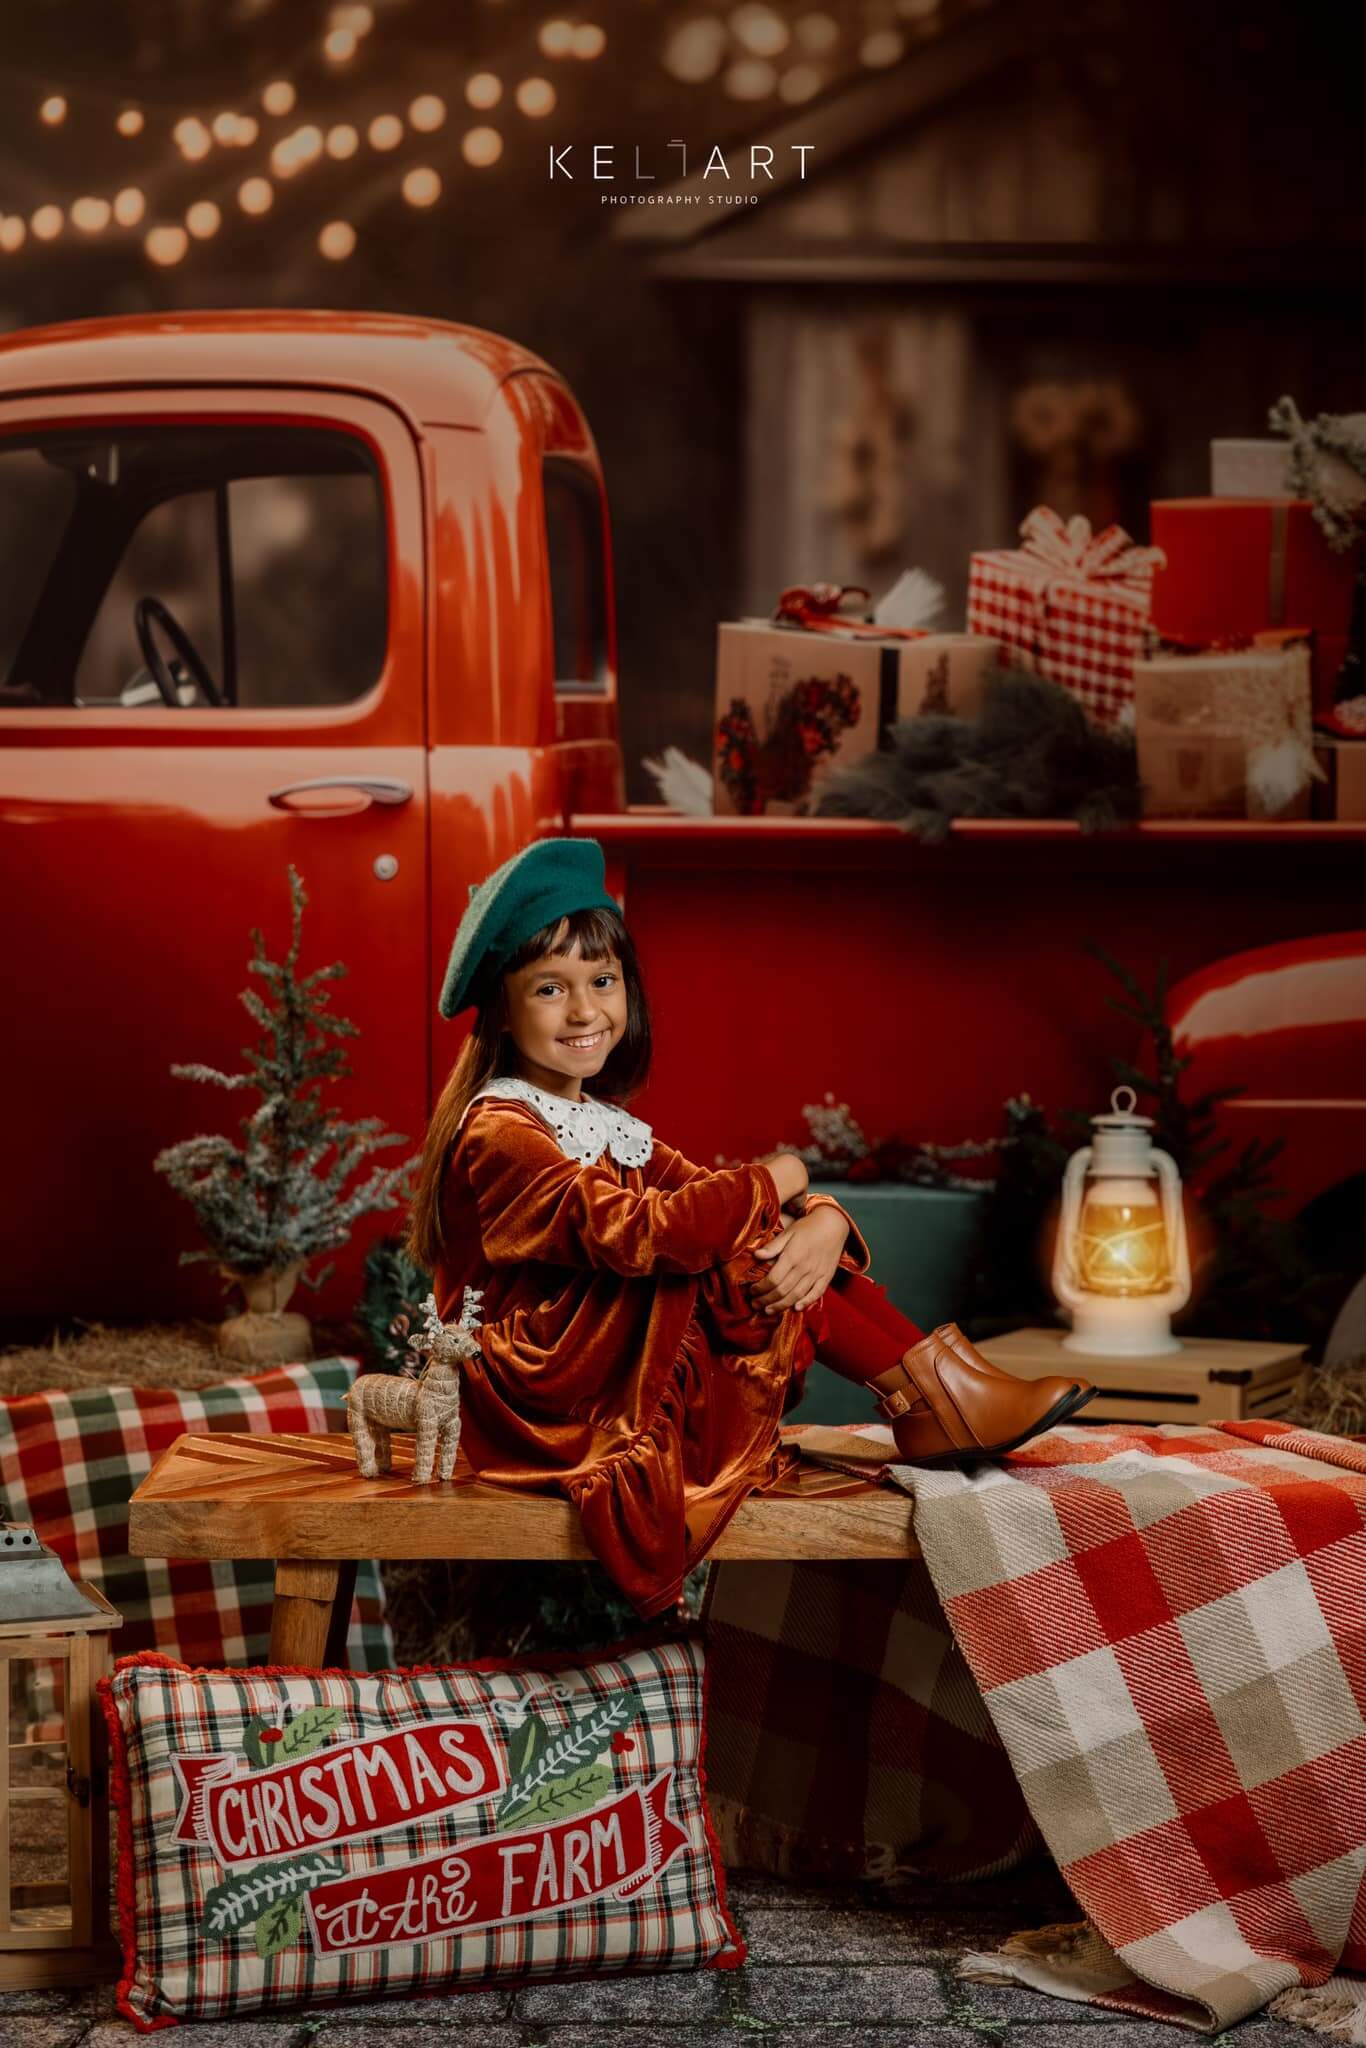 Kate Weihnachtsgeschenk Weihnachten in rotem Auto Hintergrund für Fotografie